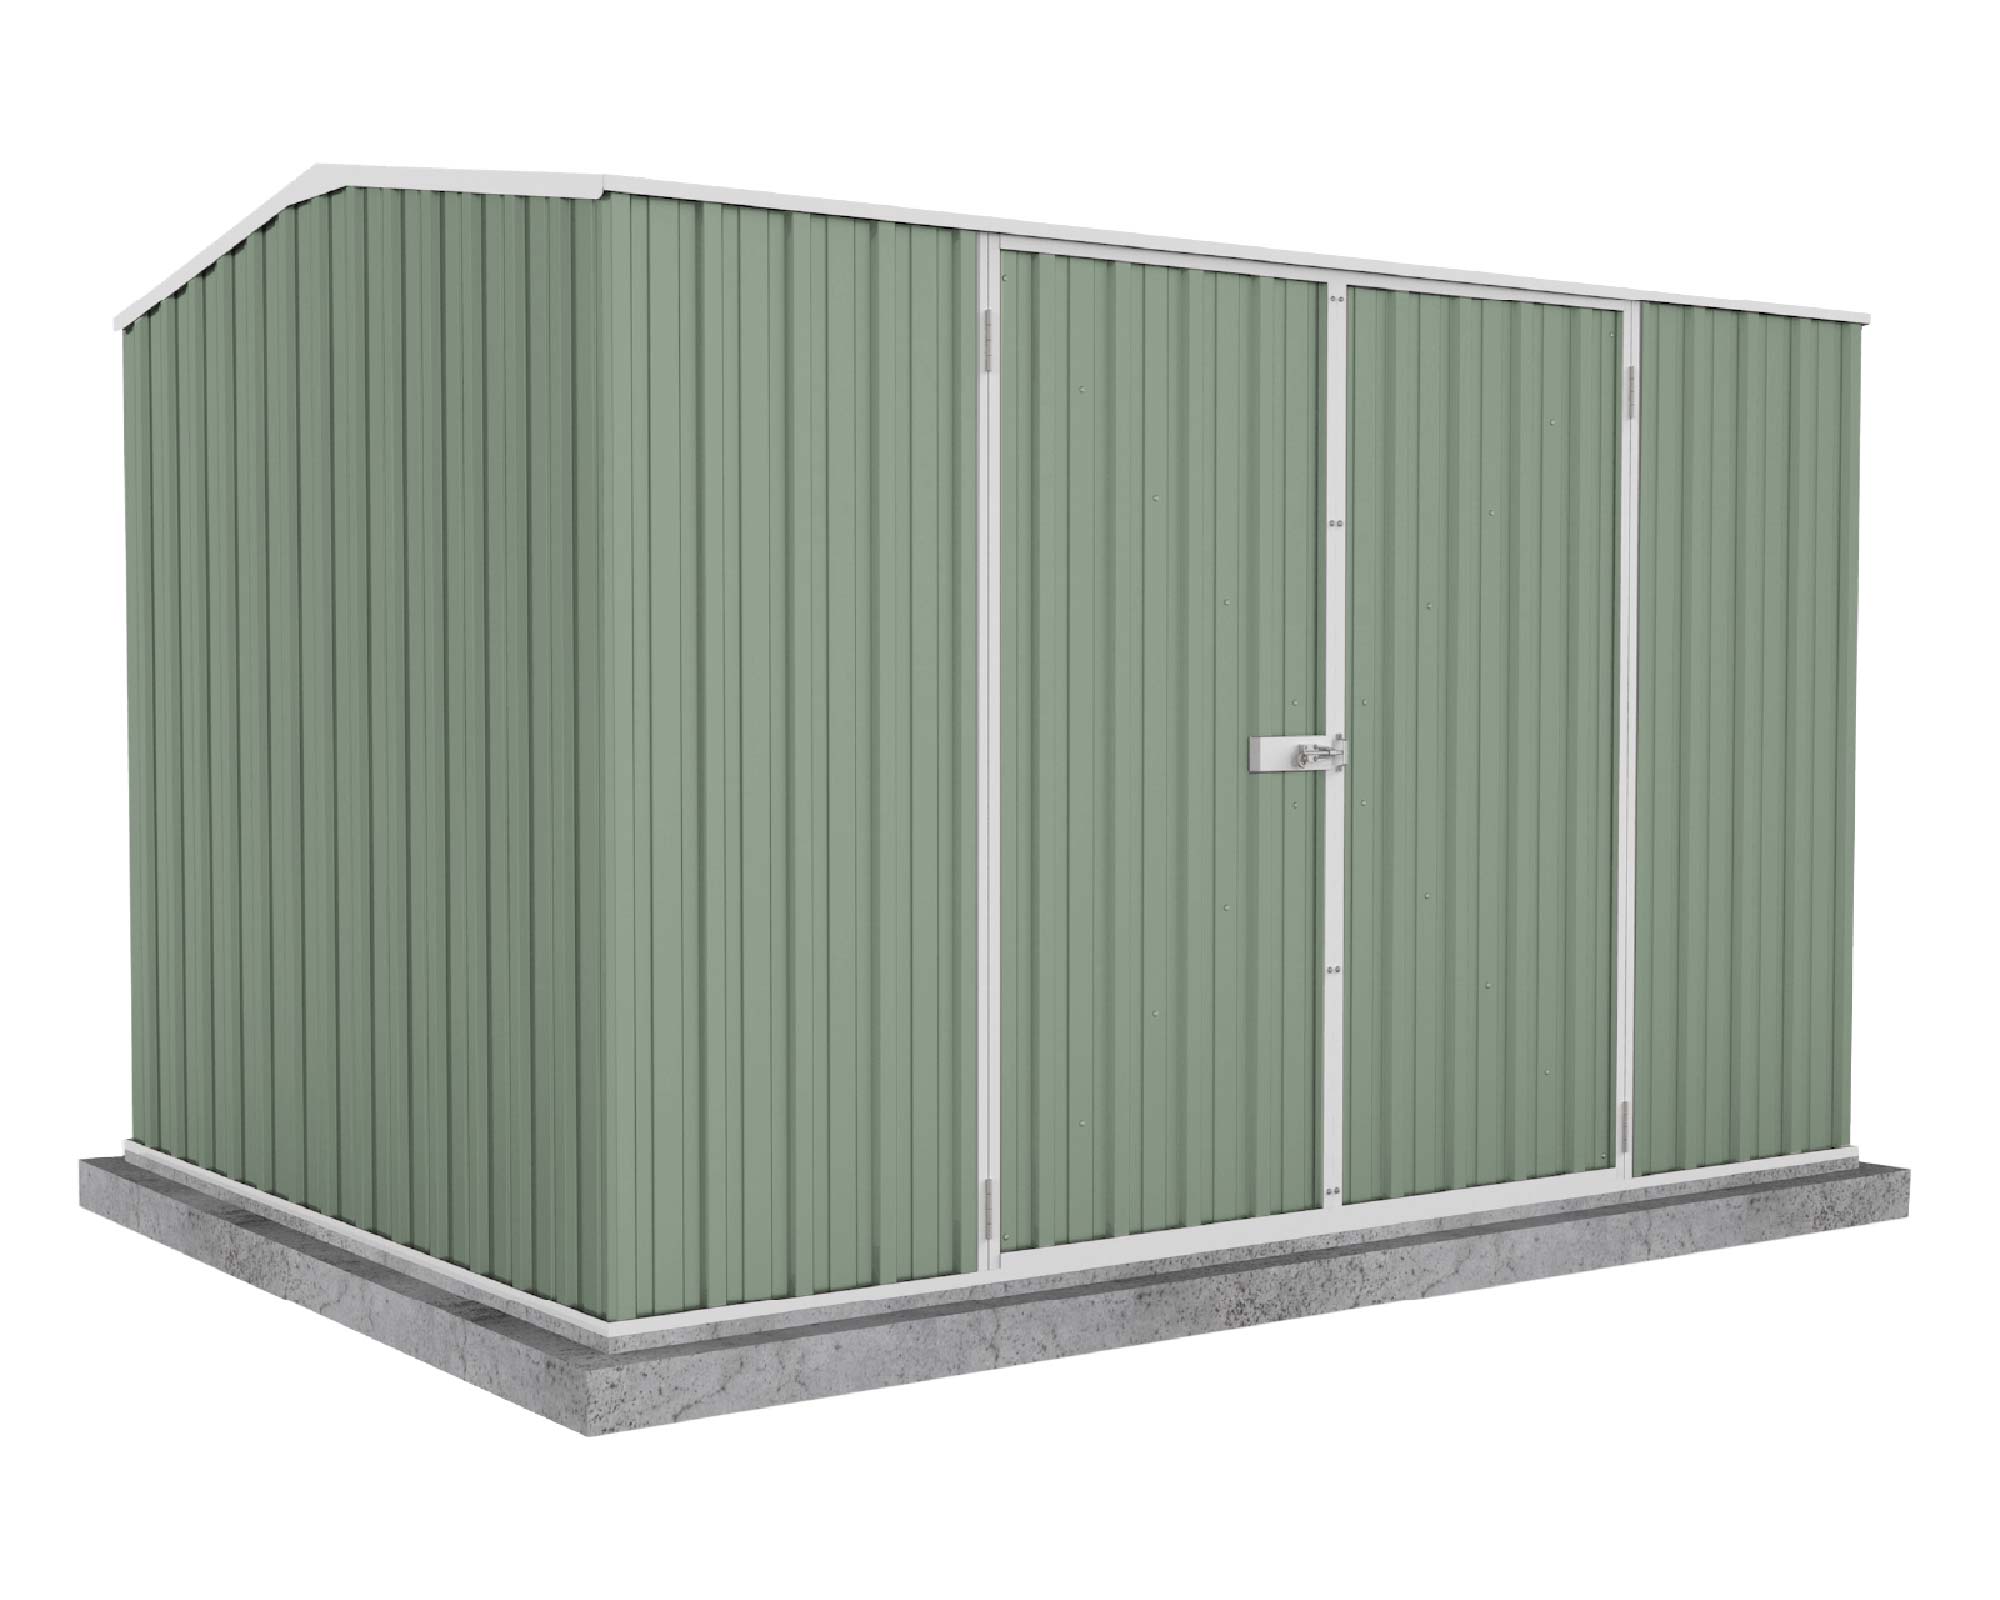 Premier Double Door Garden Shed Kit 3m x 2.26m x 2m Pale Eucalypt